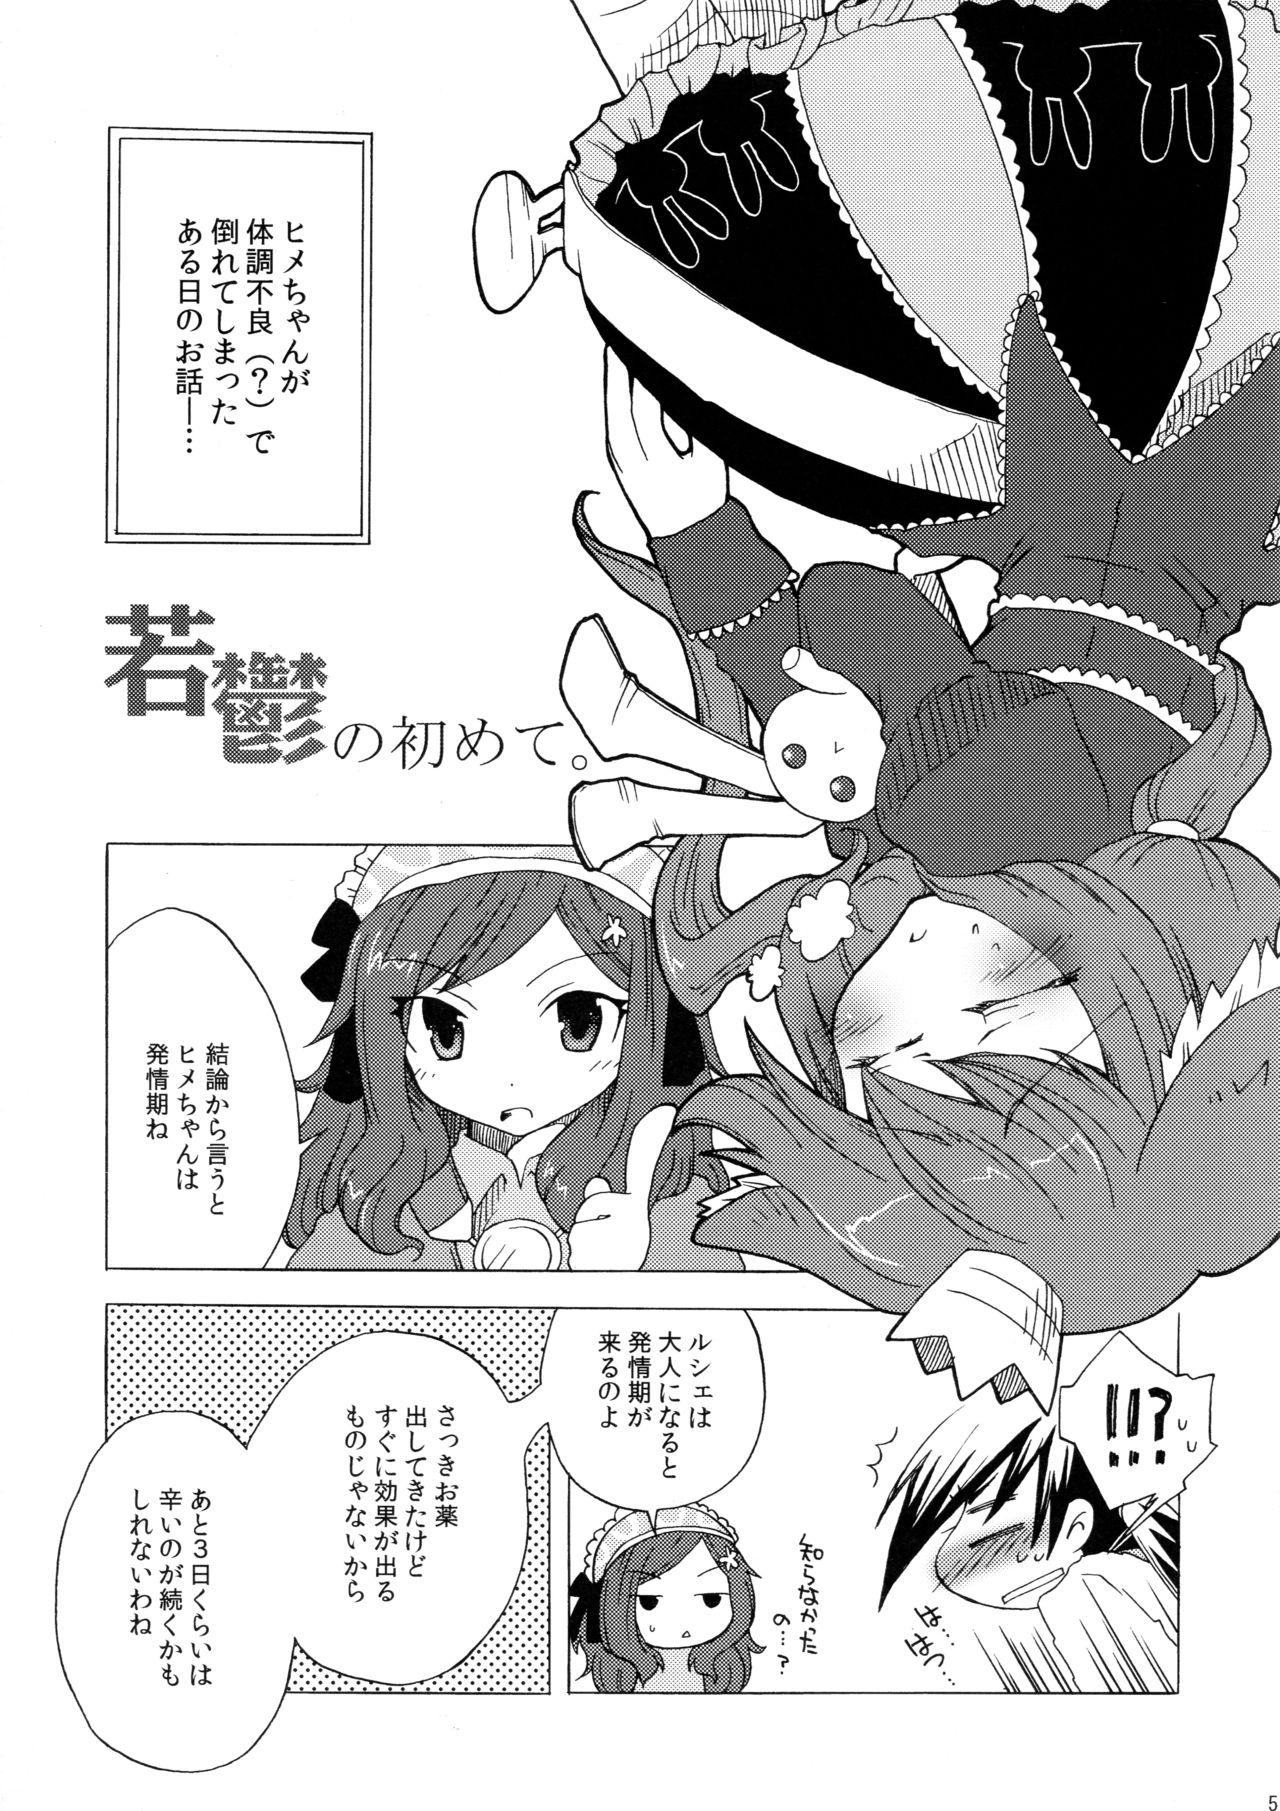 Real Waka Utsu no Hajimete. - 7th dragon Cute - Page 5